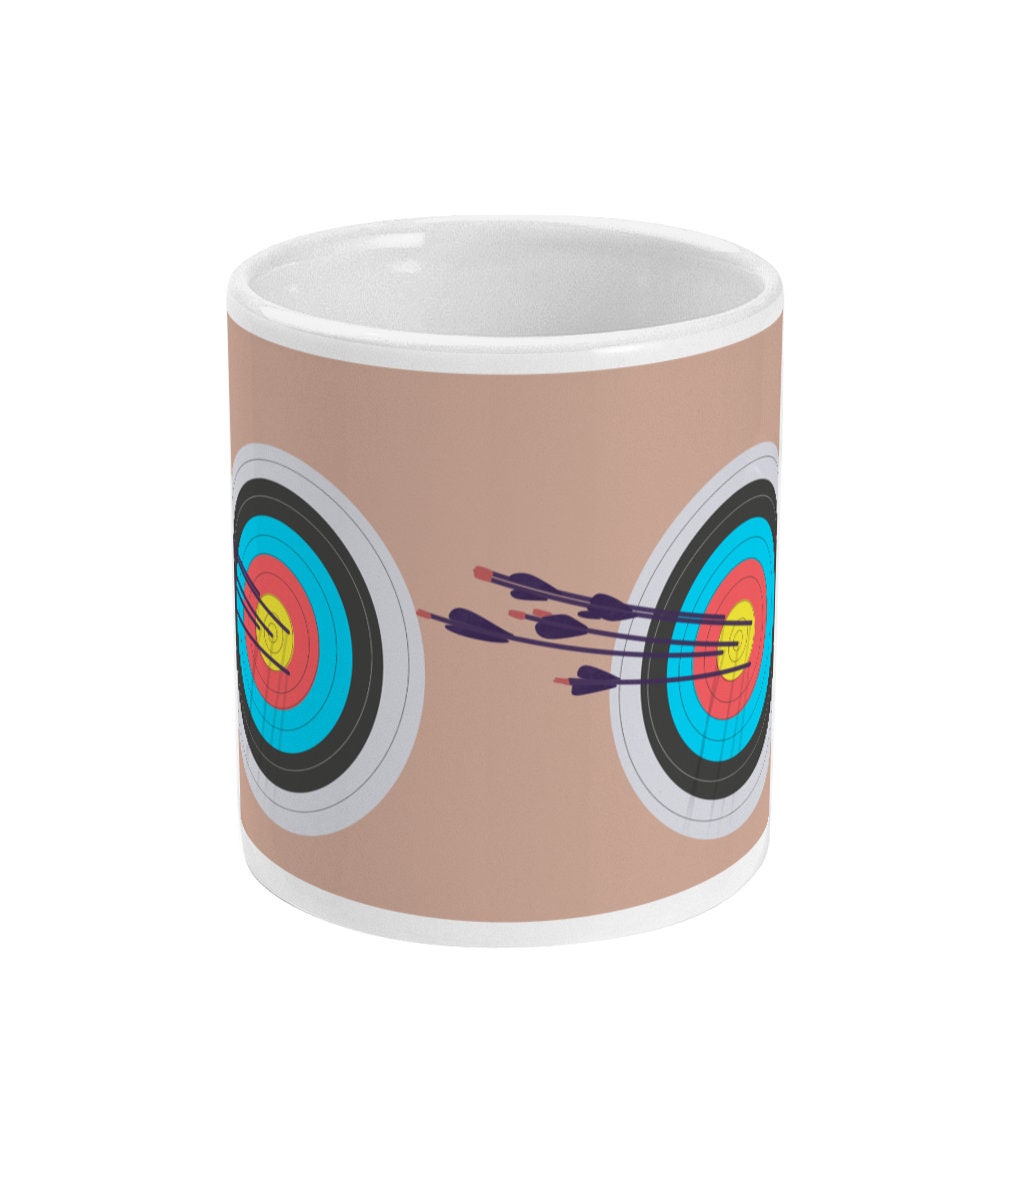 Tasse ou mug tir à l'arc "' La cible " - personnalisable